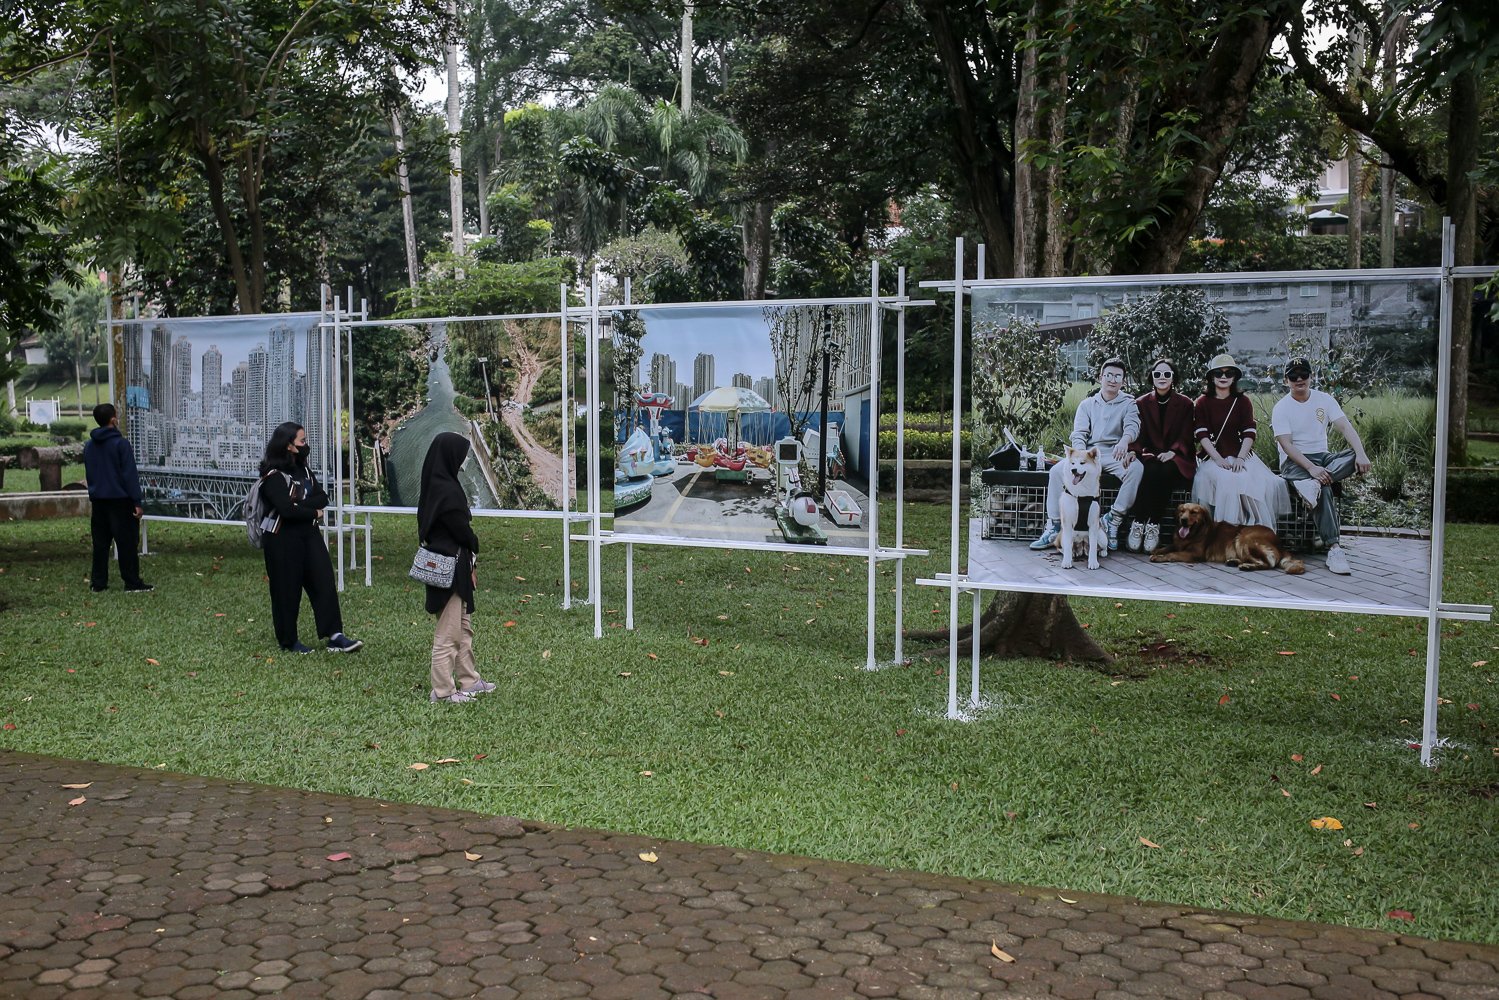 Pengunjung melihat karya fotografi yang dipamerkan dalam Jakarta International Photo Festival (JIPFest) 2022 di Taman Langsat, Jakarta, Jumat (9/9). JIPFest 2022 tersebut menghadirkan kurang lebih 50 tokoh fotografi dari sembilan negara yang akan mengisi 53 acara dan berlangsung pada 9-25 September 2022 di lima lokasi area Blok M, Jakarta Selatan.